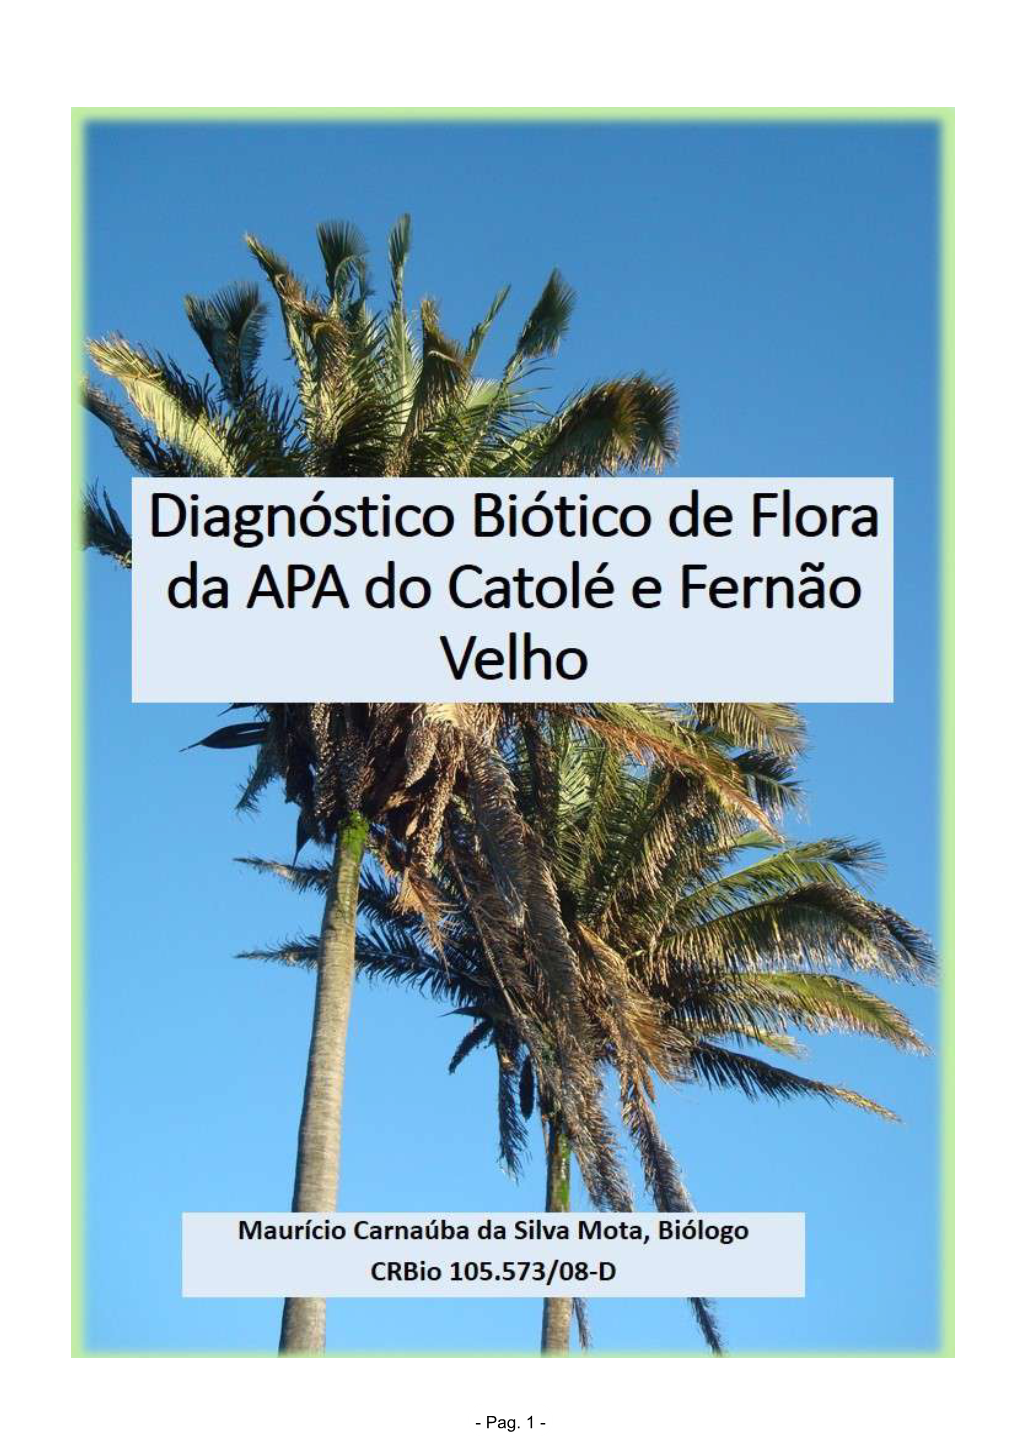 Diagnóstico Biótico Da APA Do Catolé E Fernão Velho (Flora)